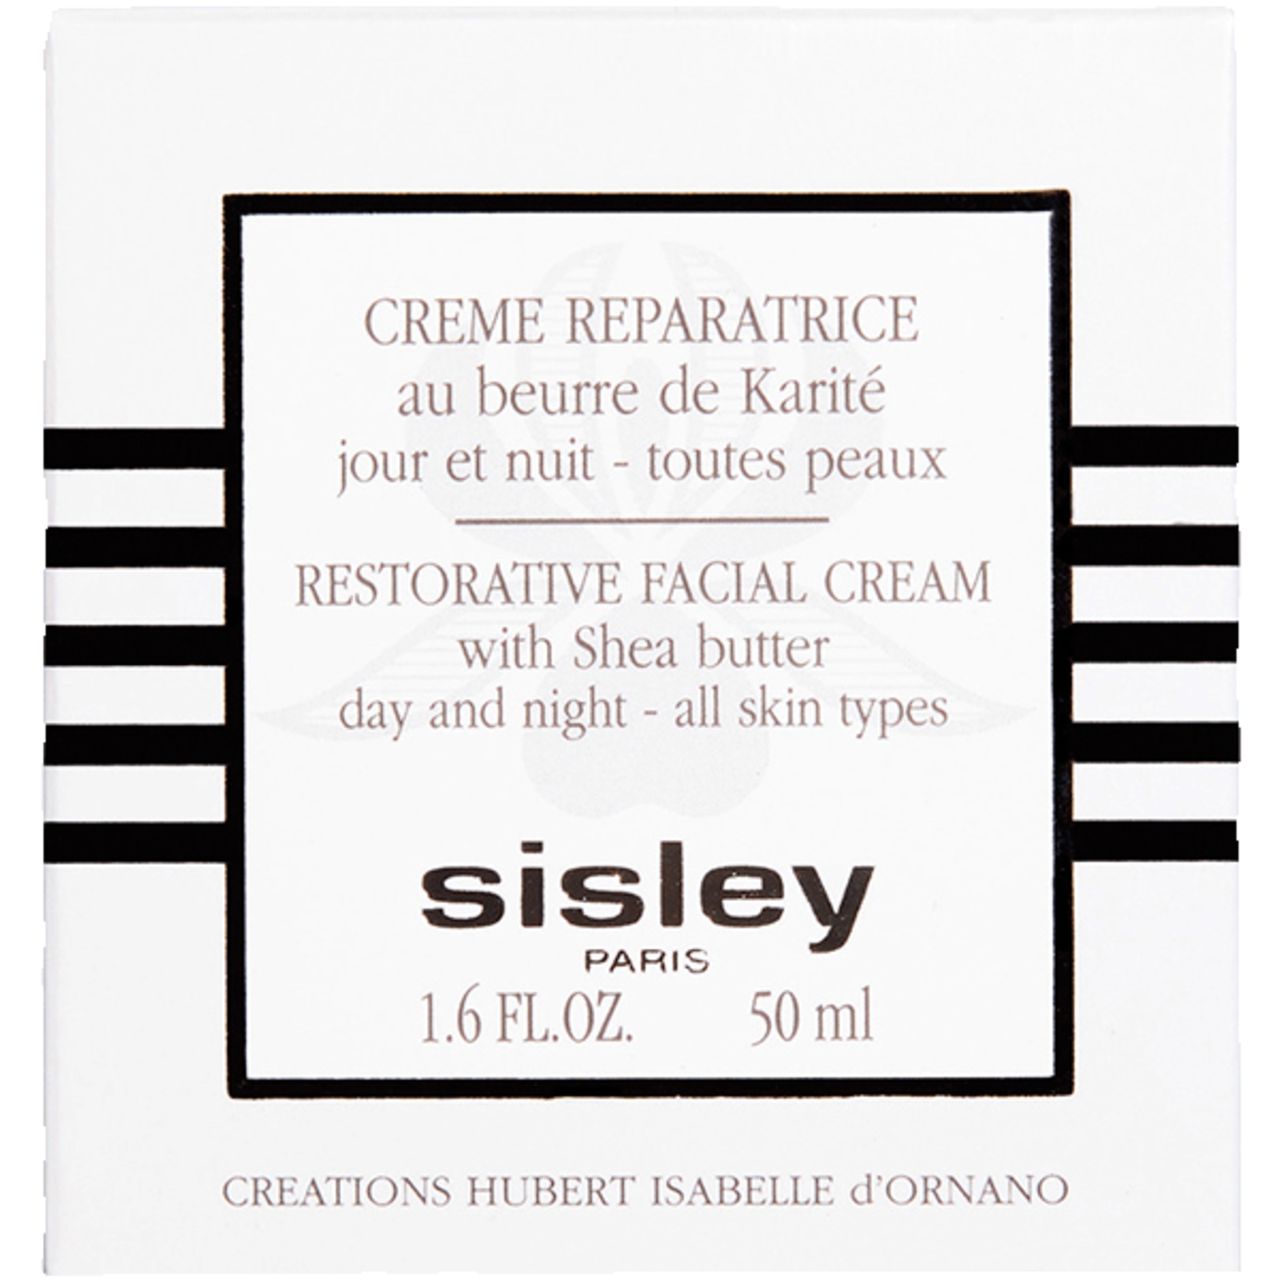 Sisley, Creme Reparatrice